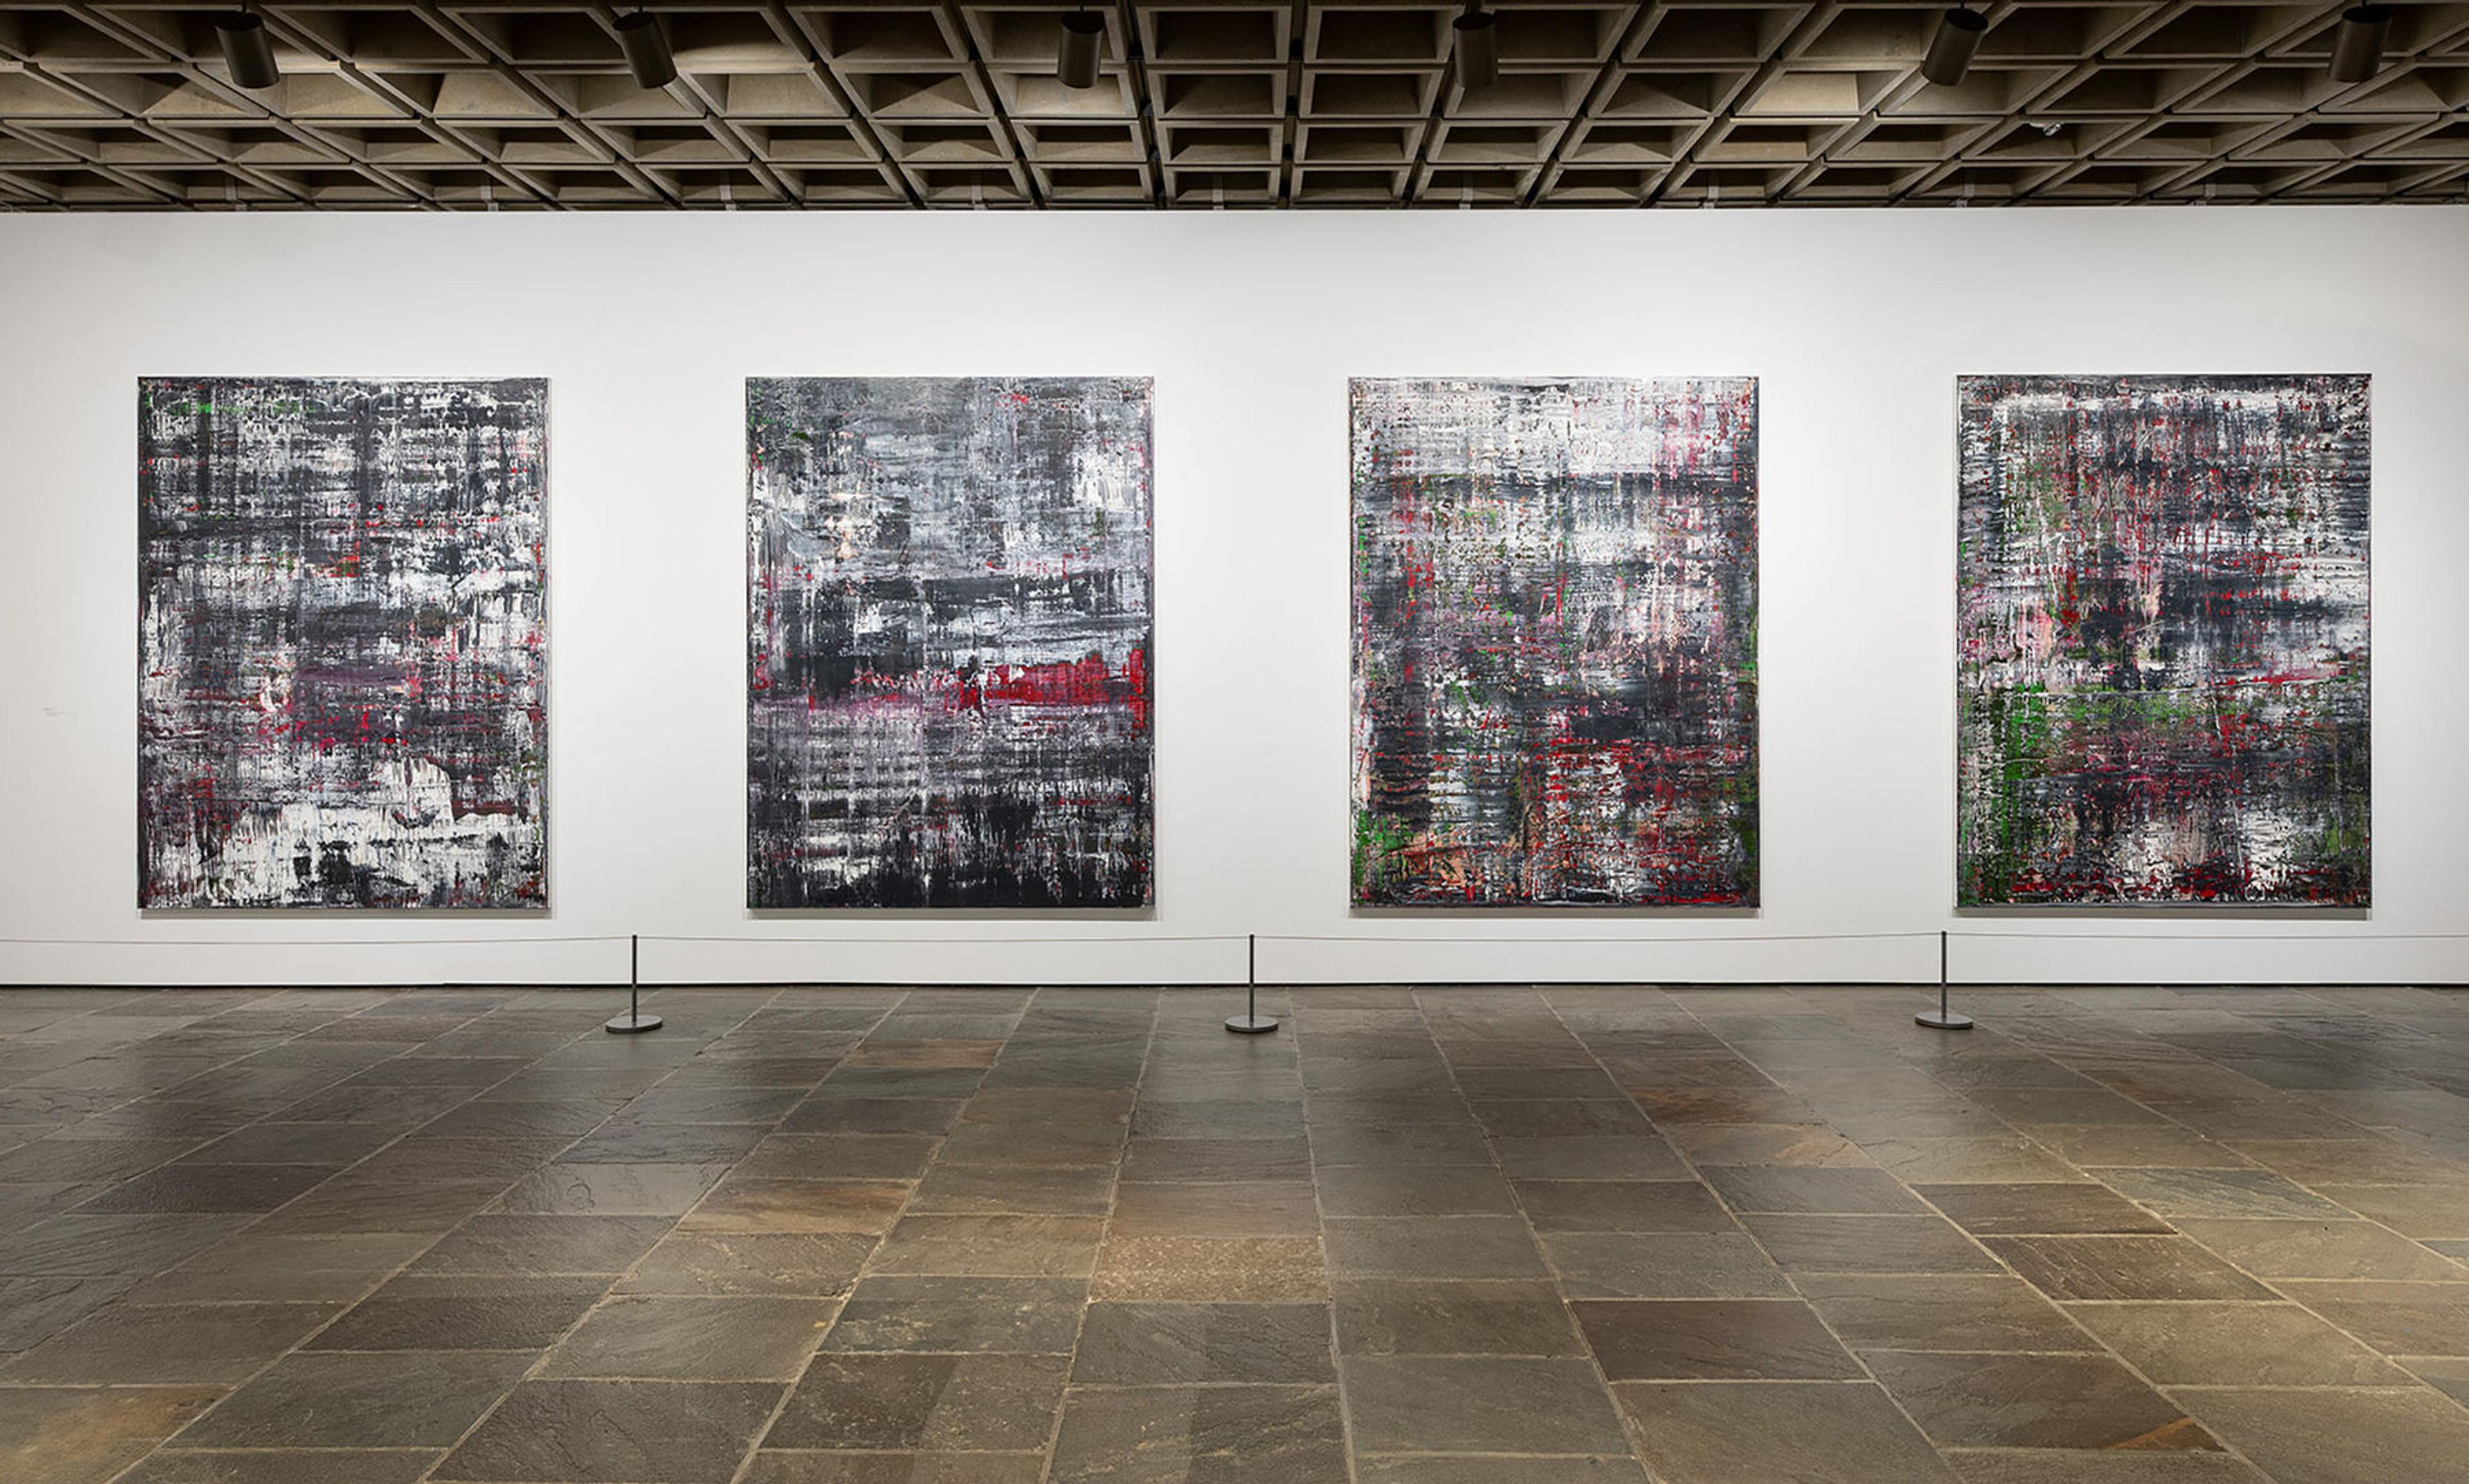 Installation photograph showing Gerhard Richter's "Birkenau" series